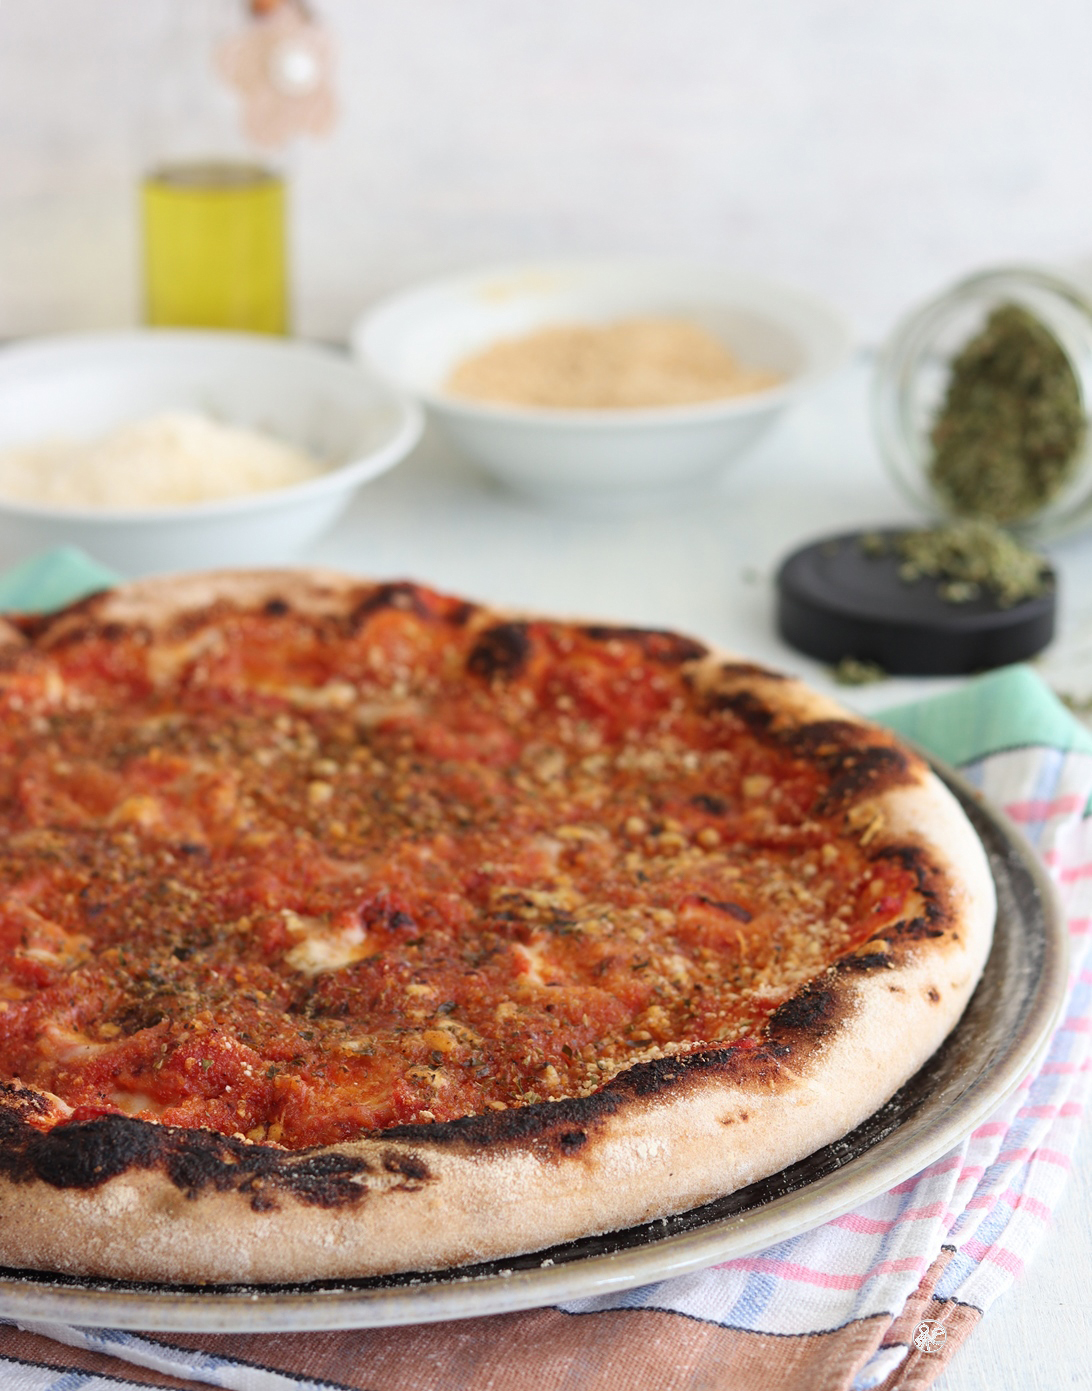 Pizza Faccia di vecchia senza glutine - La Cassata Celiaca